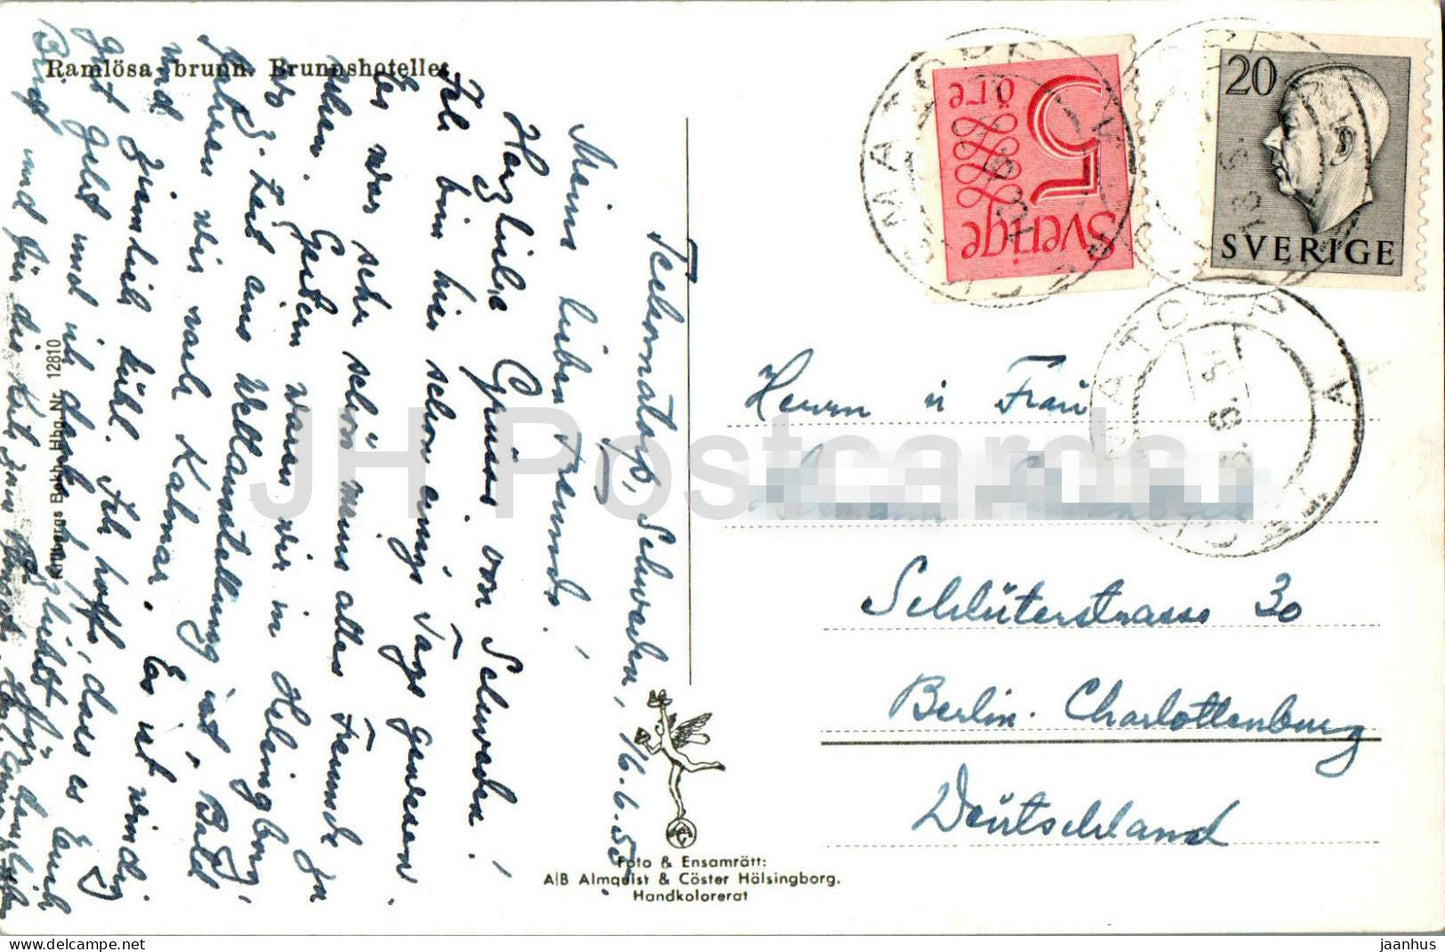 Ramlosa brunn - Brunnshotelle - Hotel - 161 - alte Postkarte - 1955 - Schweden - gebraucht 